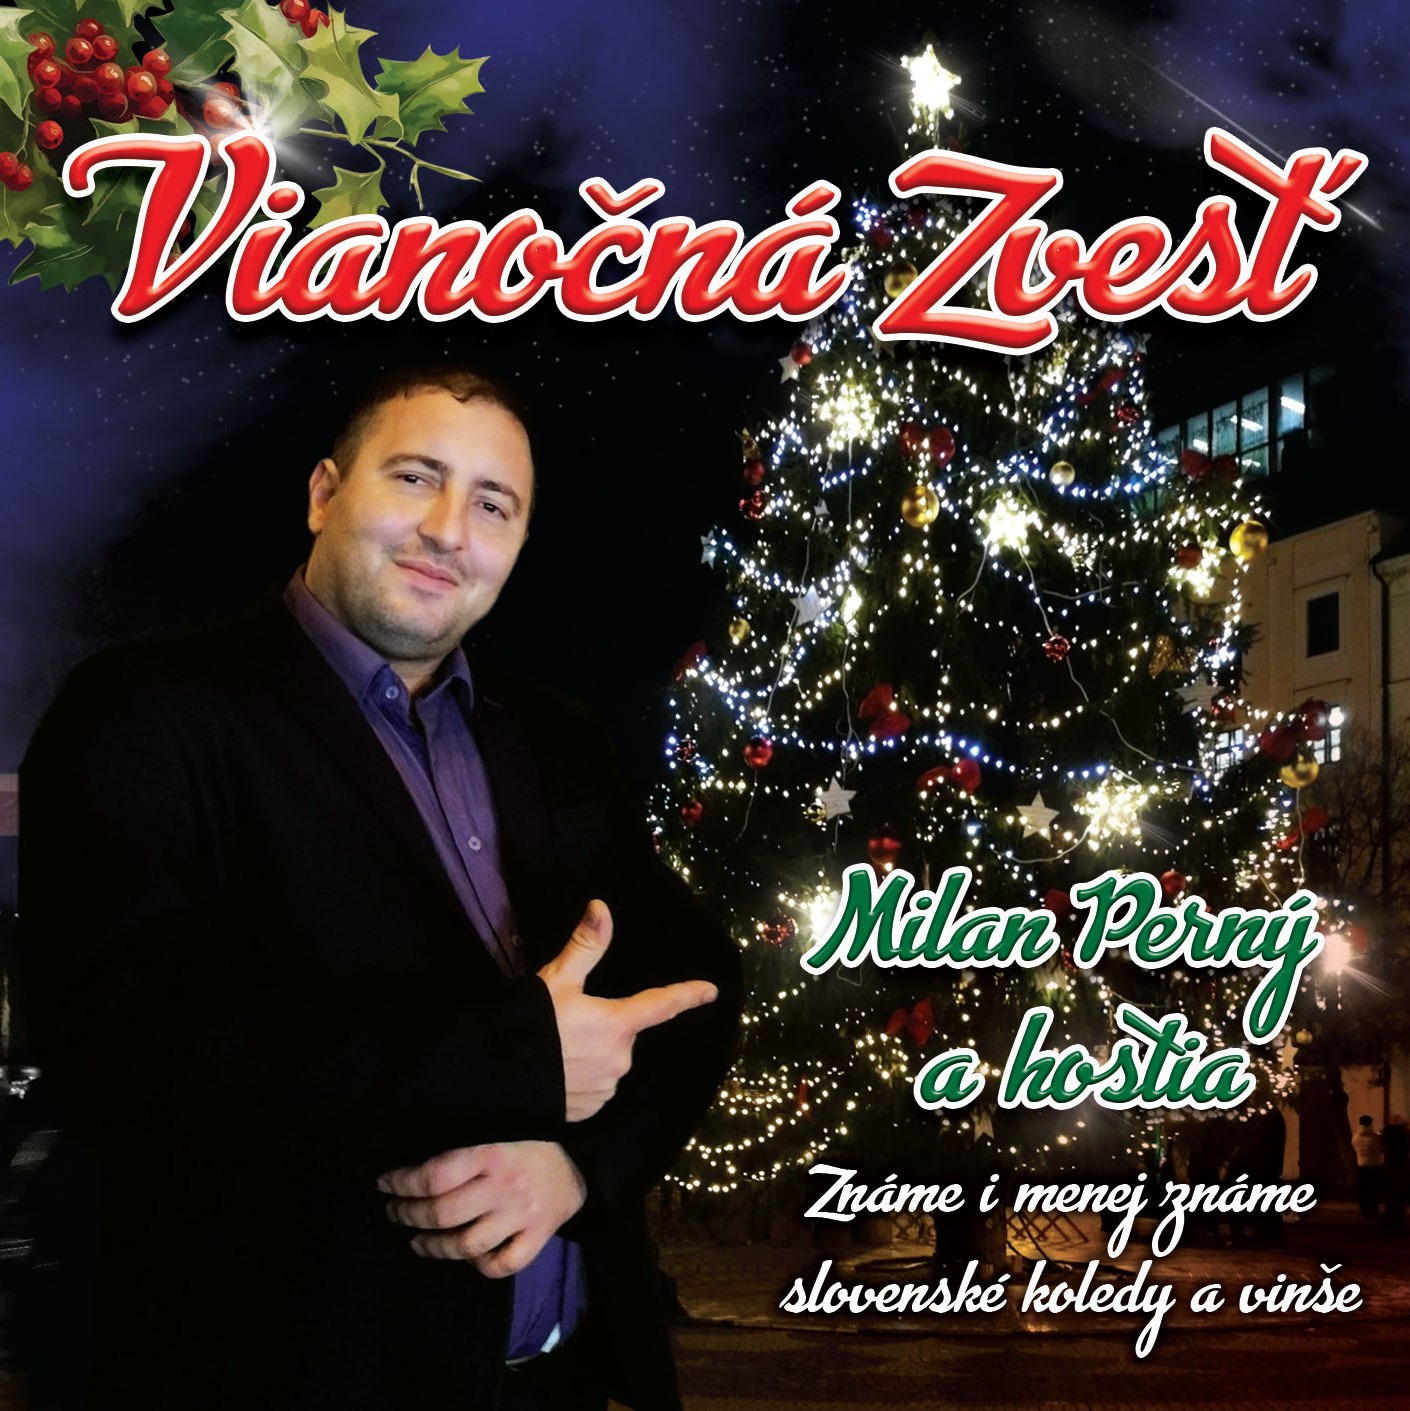 Milan Pern a hostia - Vianon zves (cd)